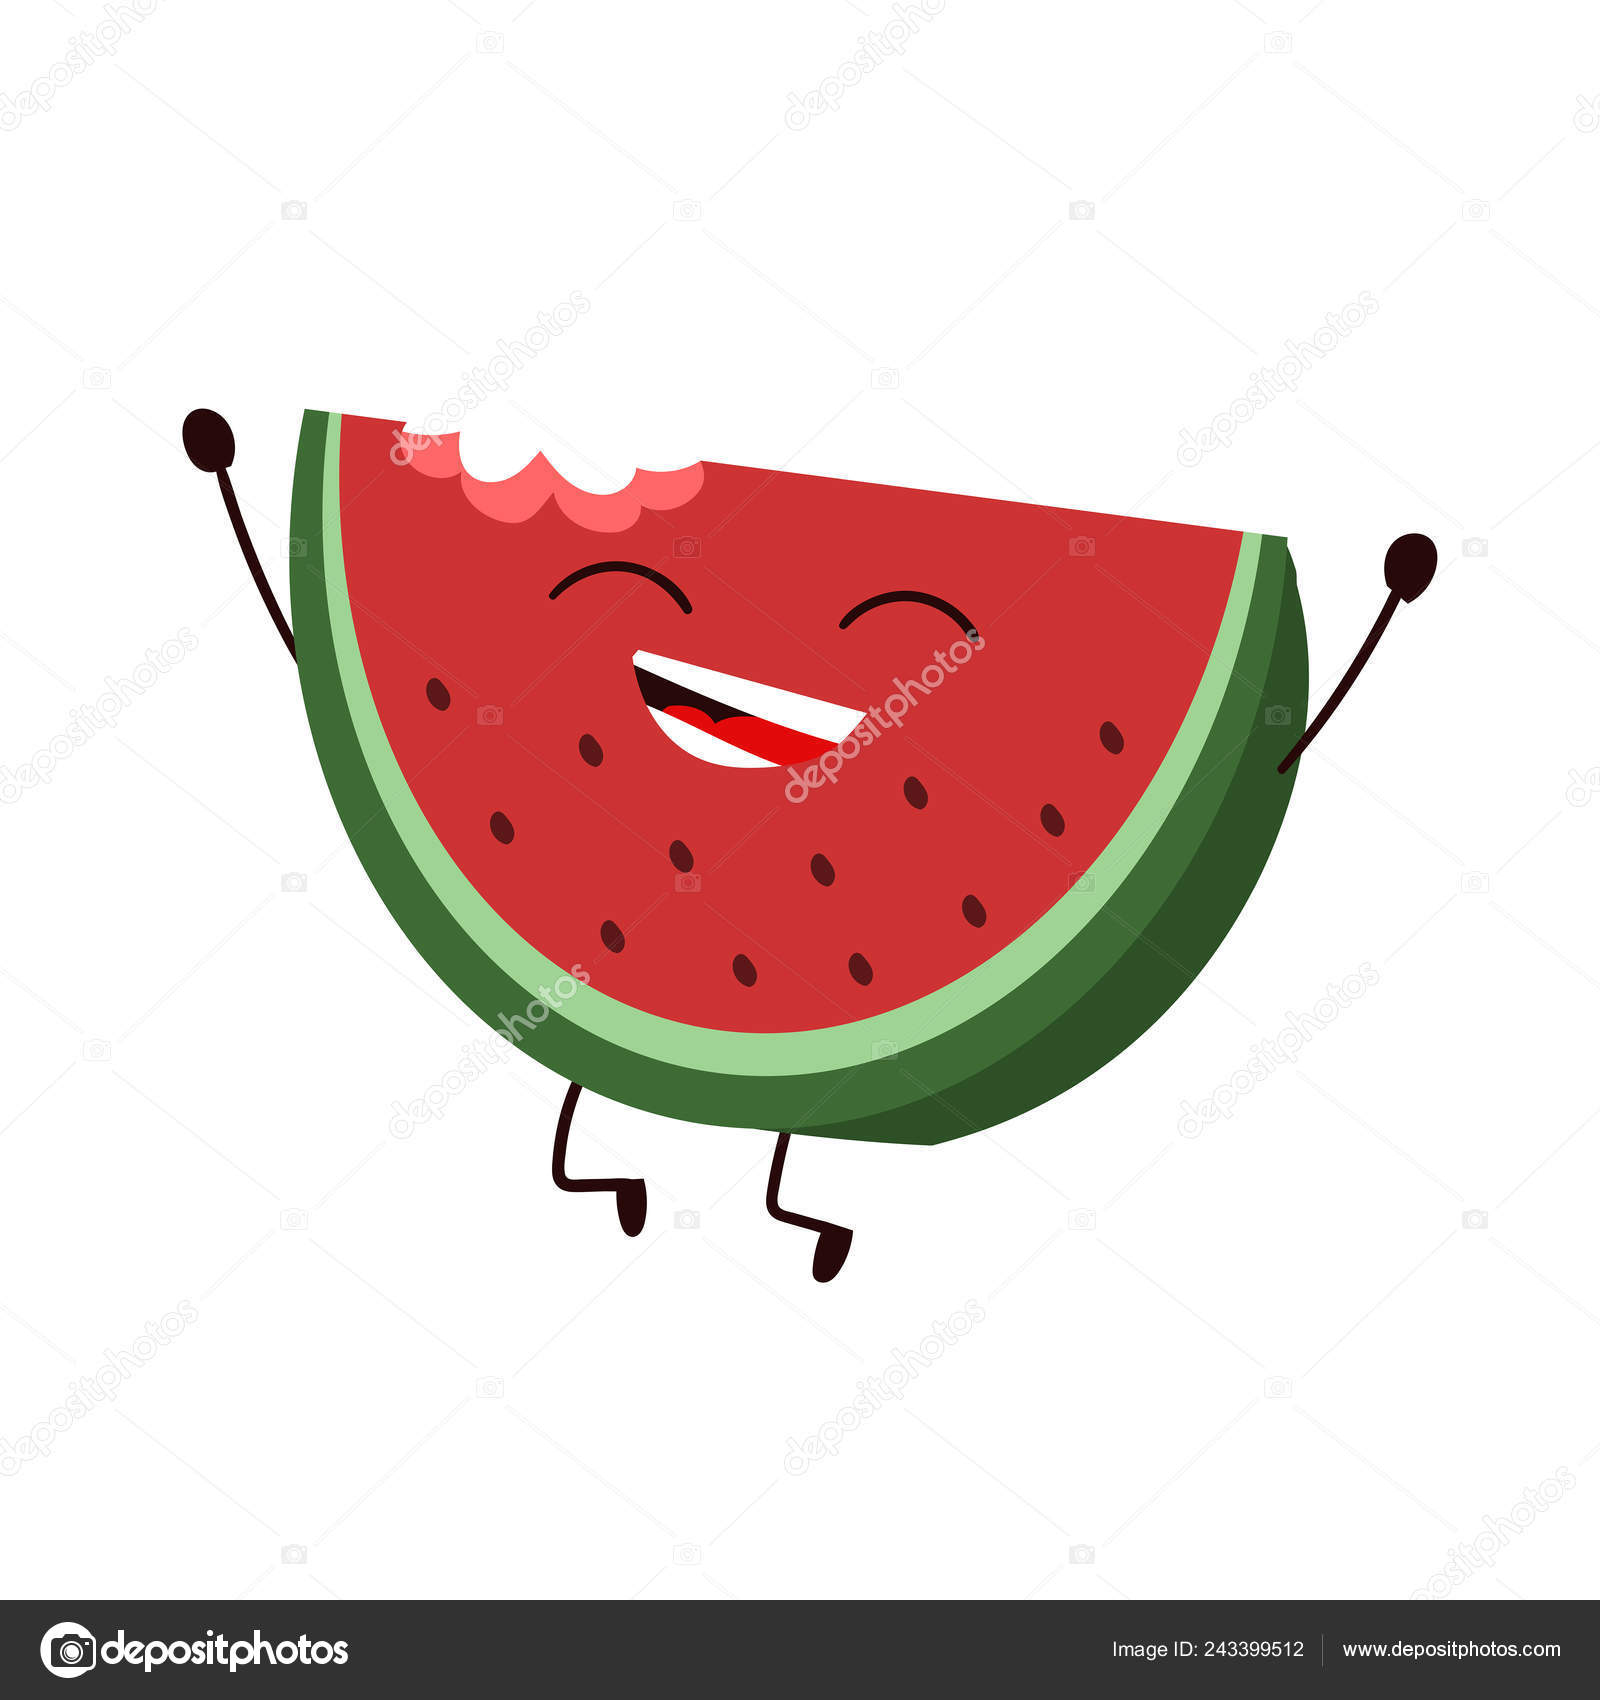 Cartoon character of watermelon Stock Photos, Royalty Free Cartoon character  of watermelon Images | Depositphotos